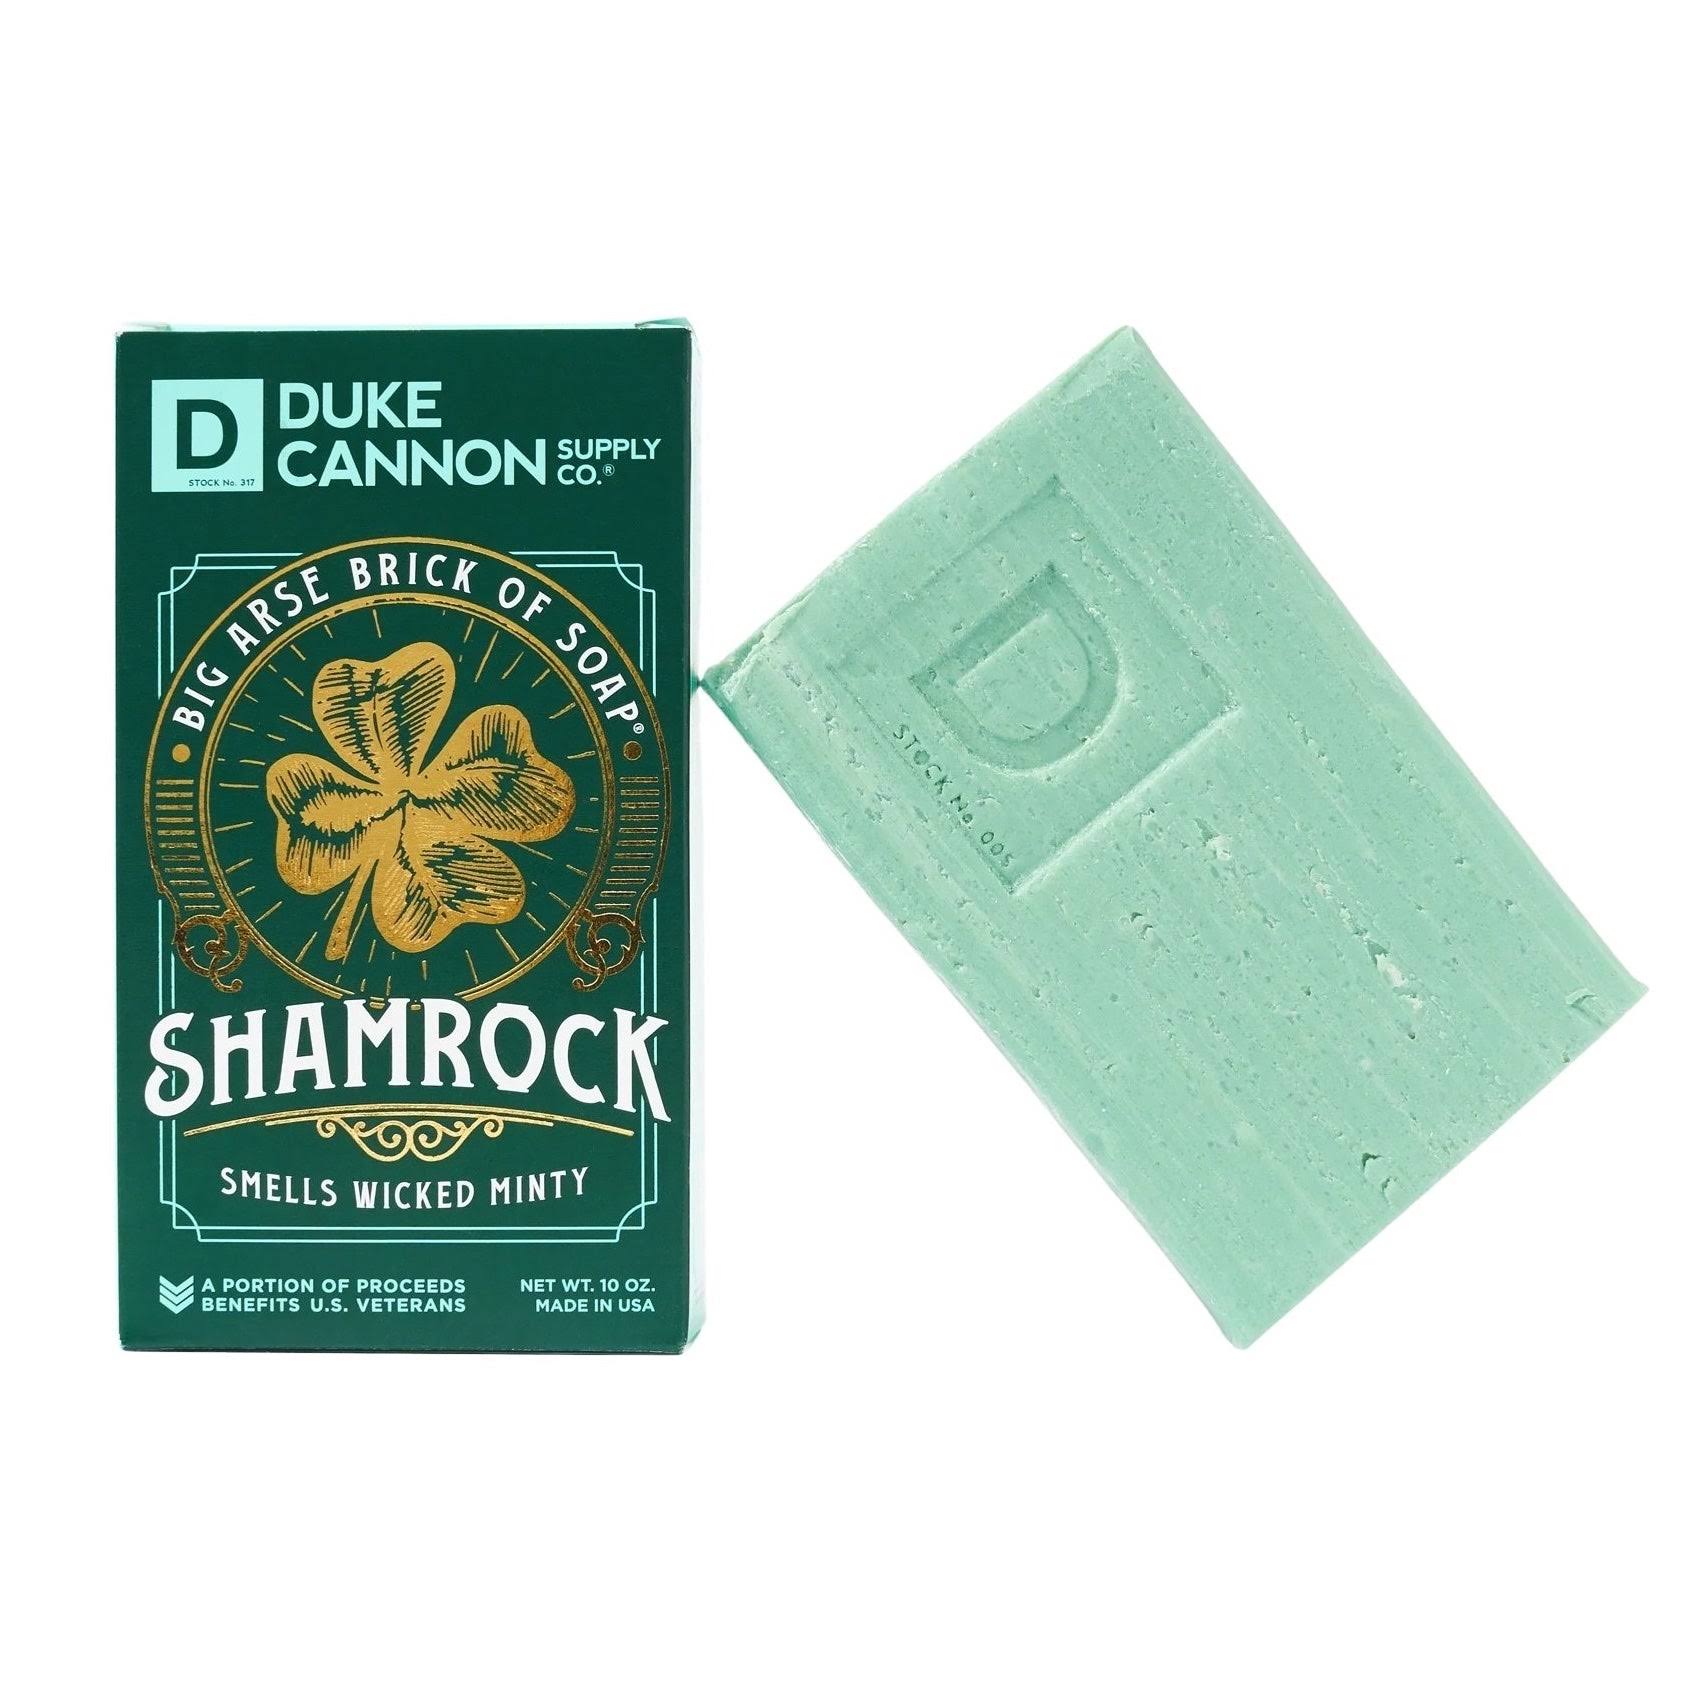 Duke Cannon Big Arse Brick of Soap Shamrock